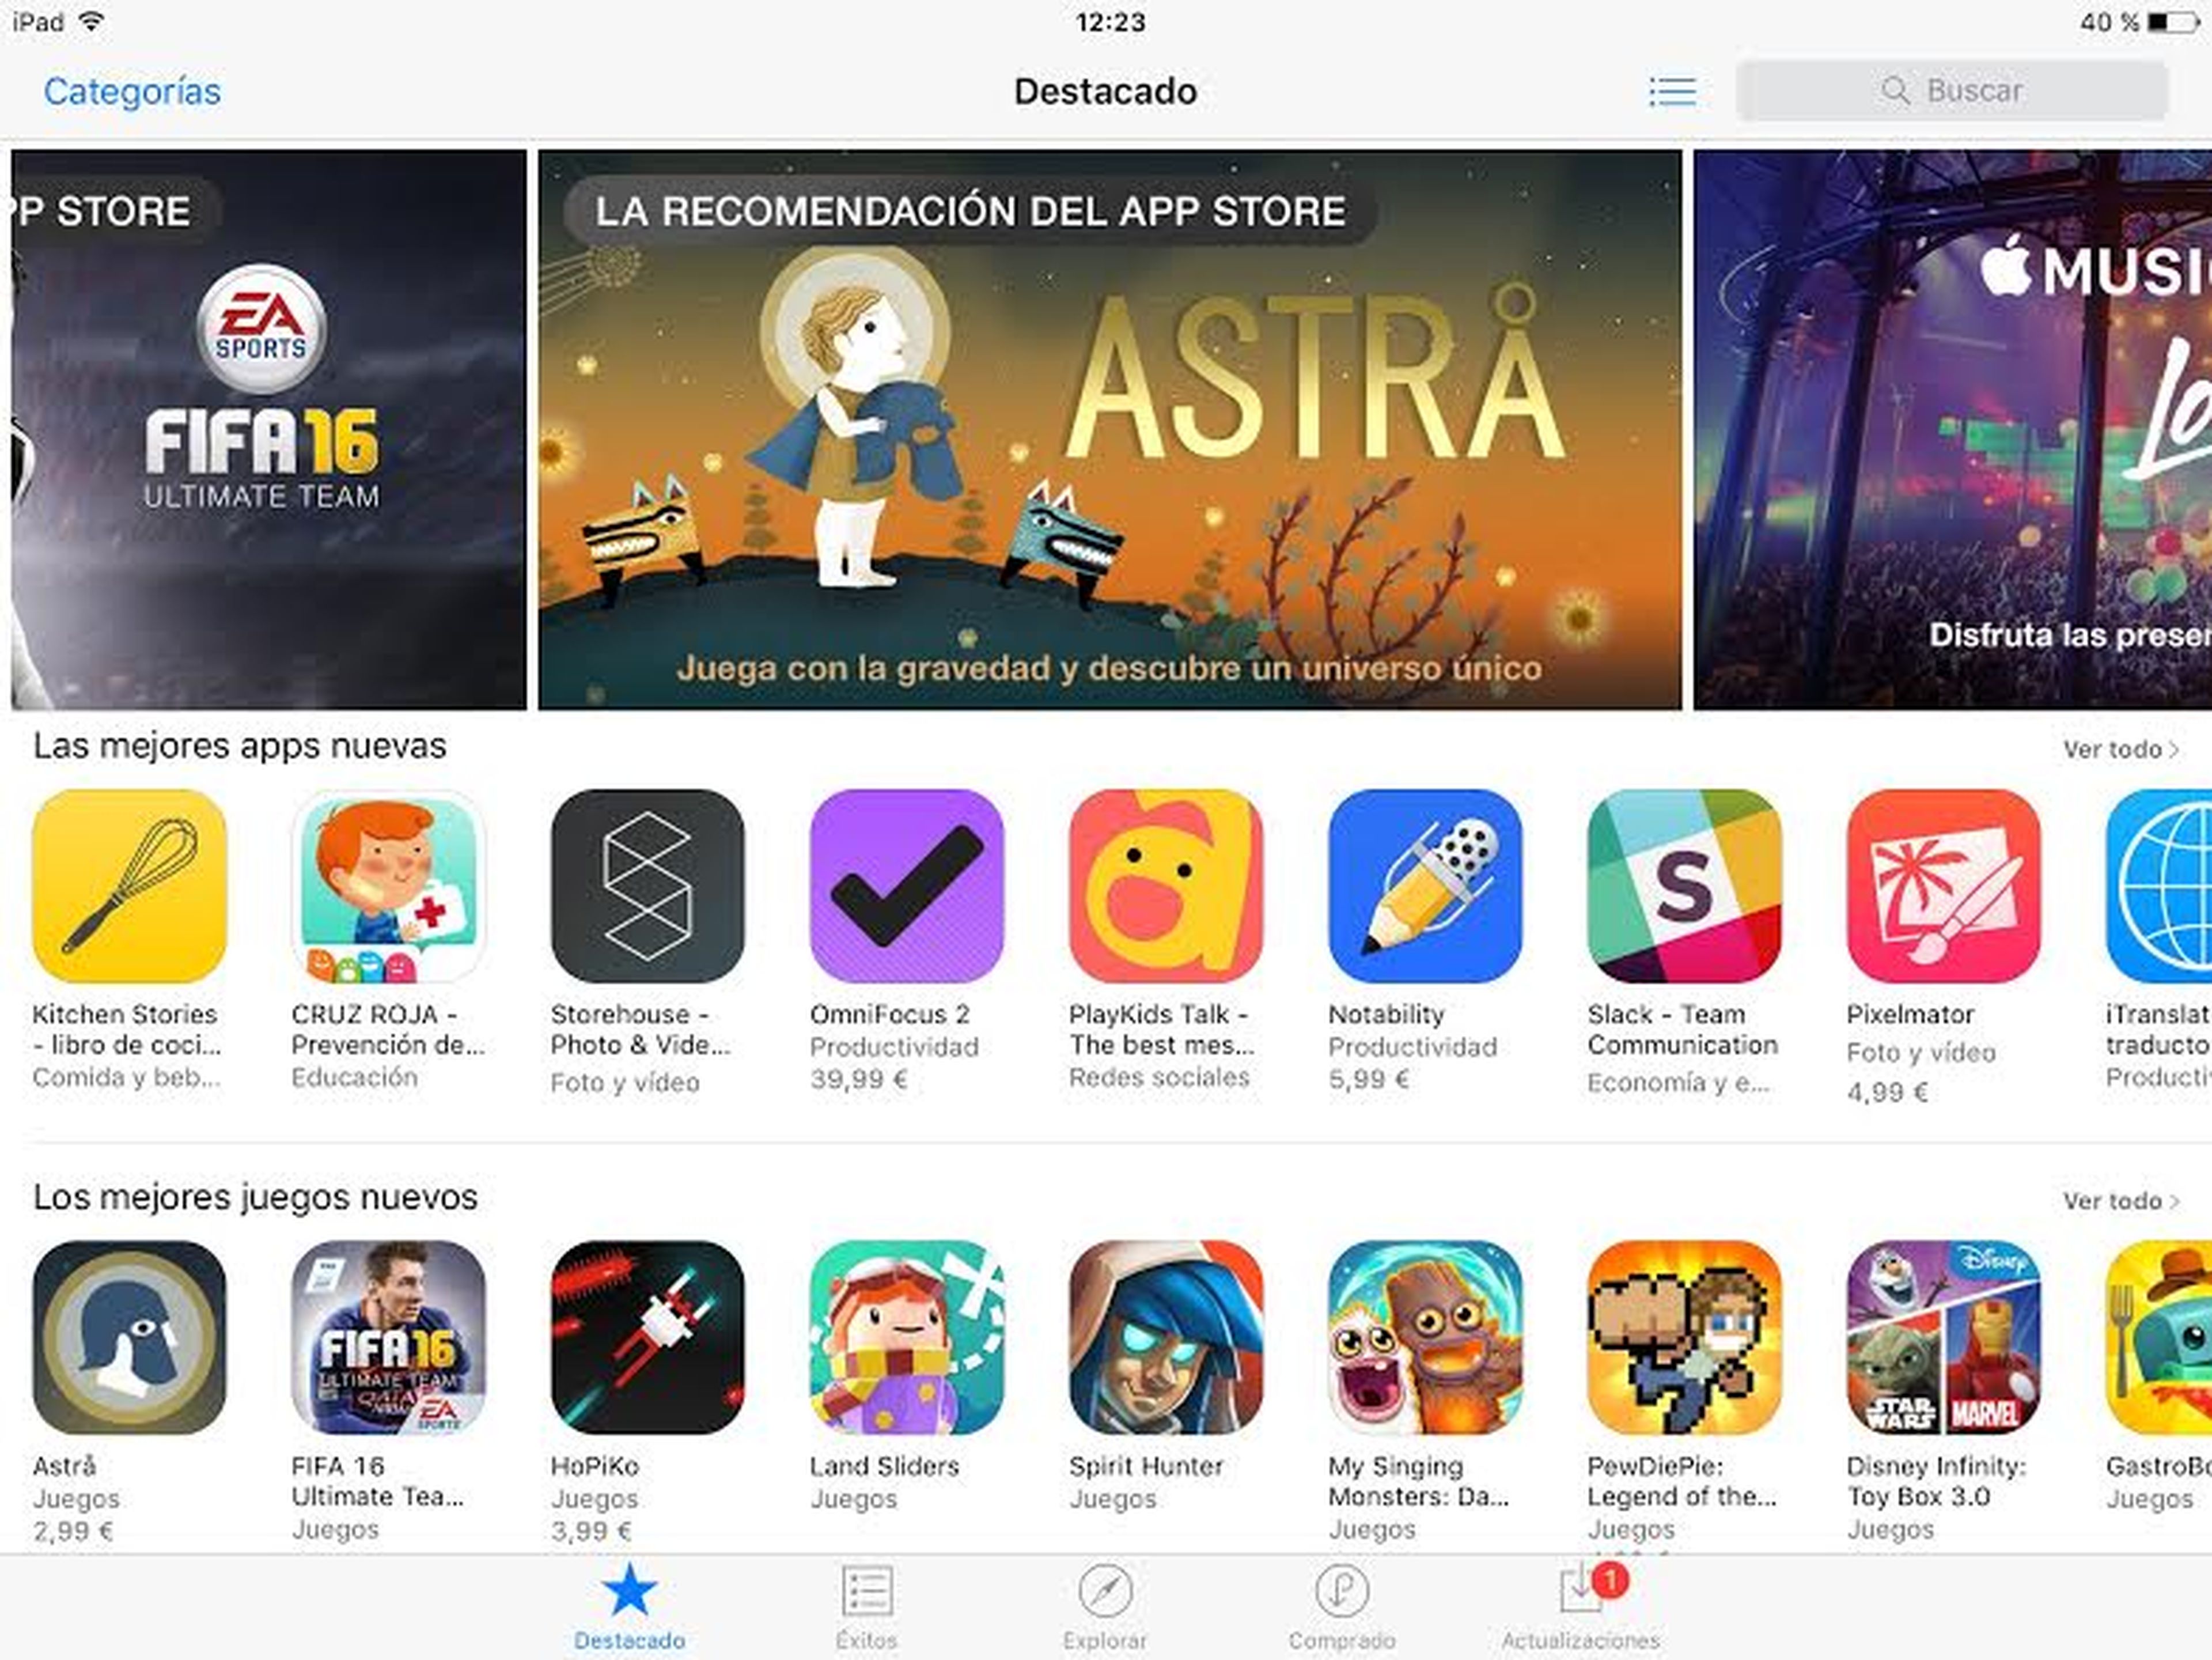 El lanzamiento de Astrå ha sido destacado en la App Store